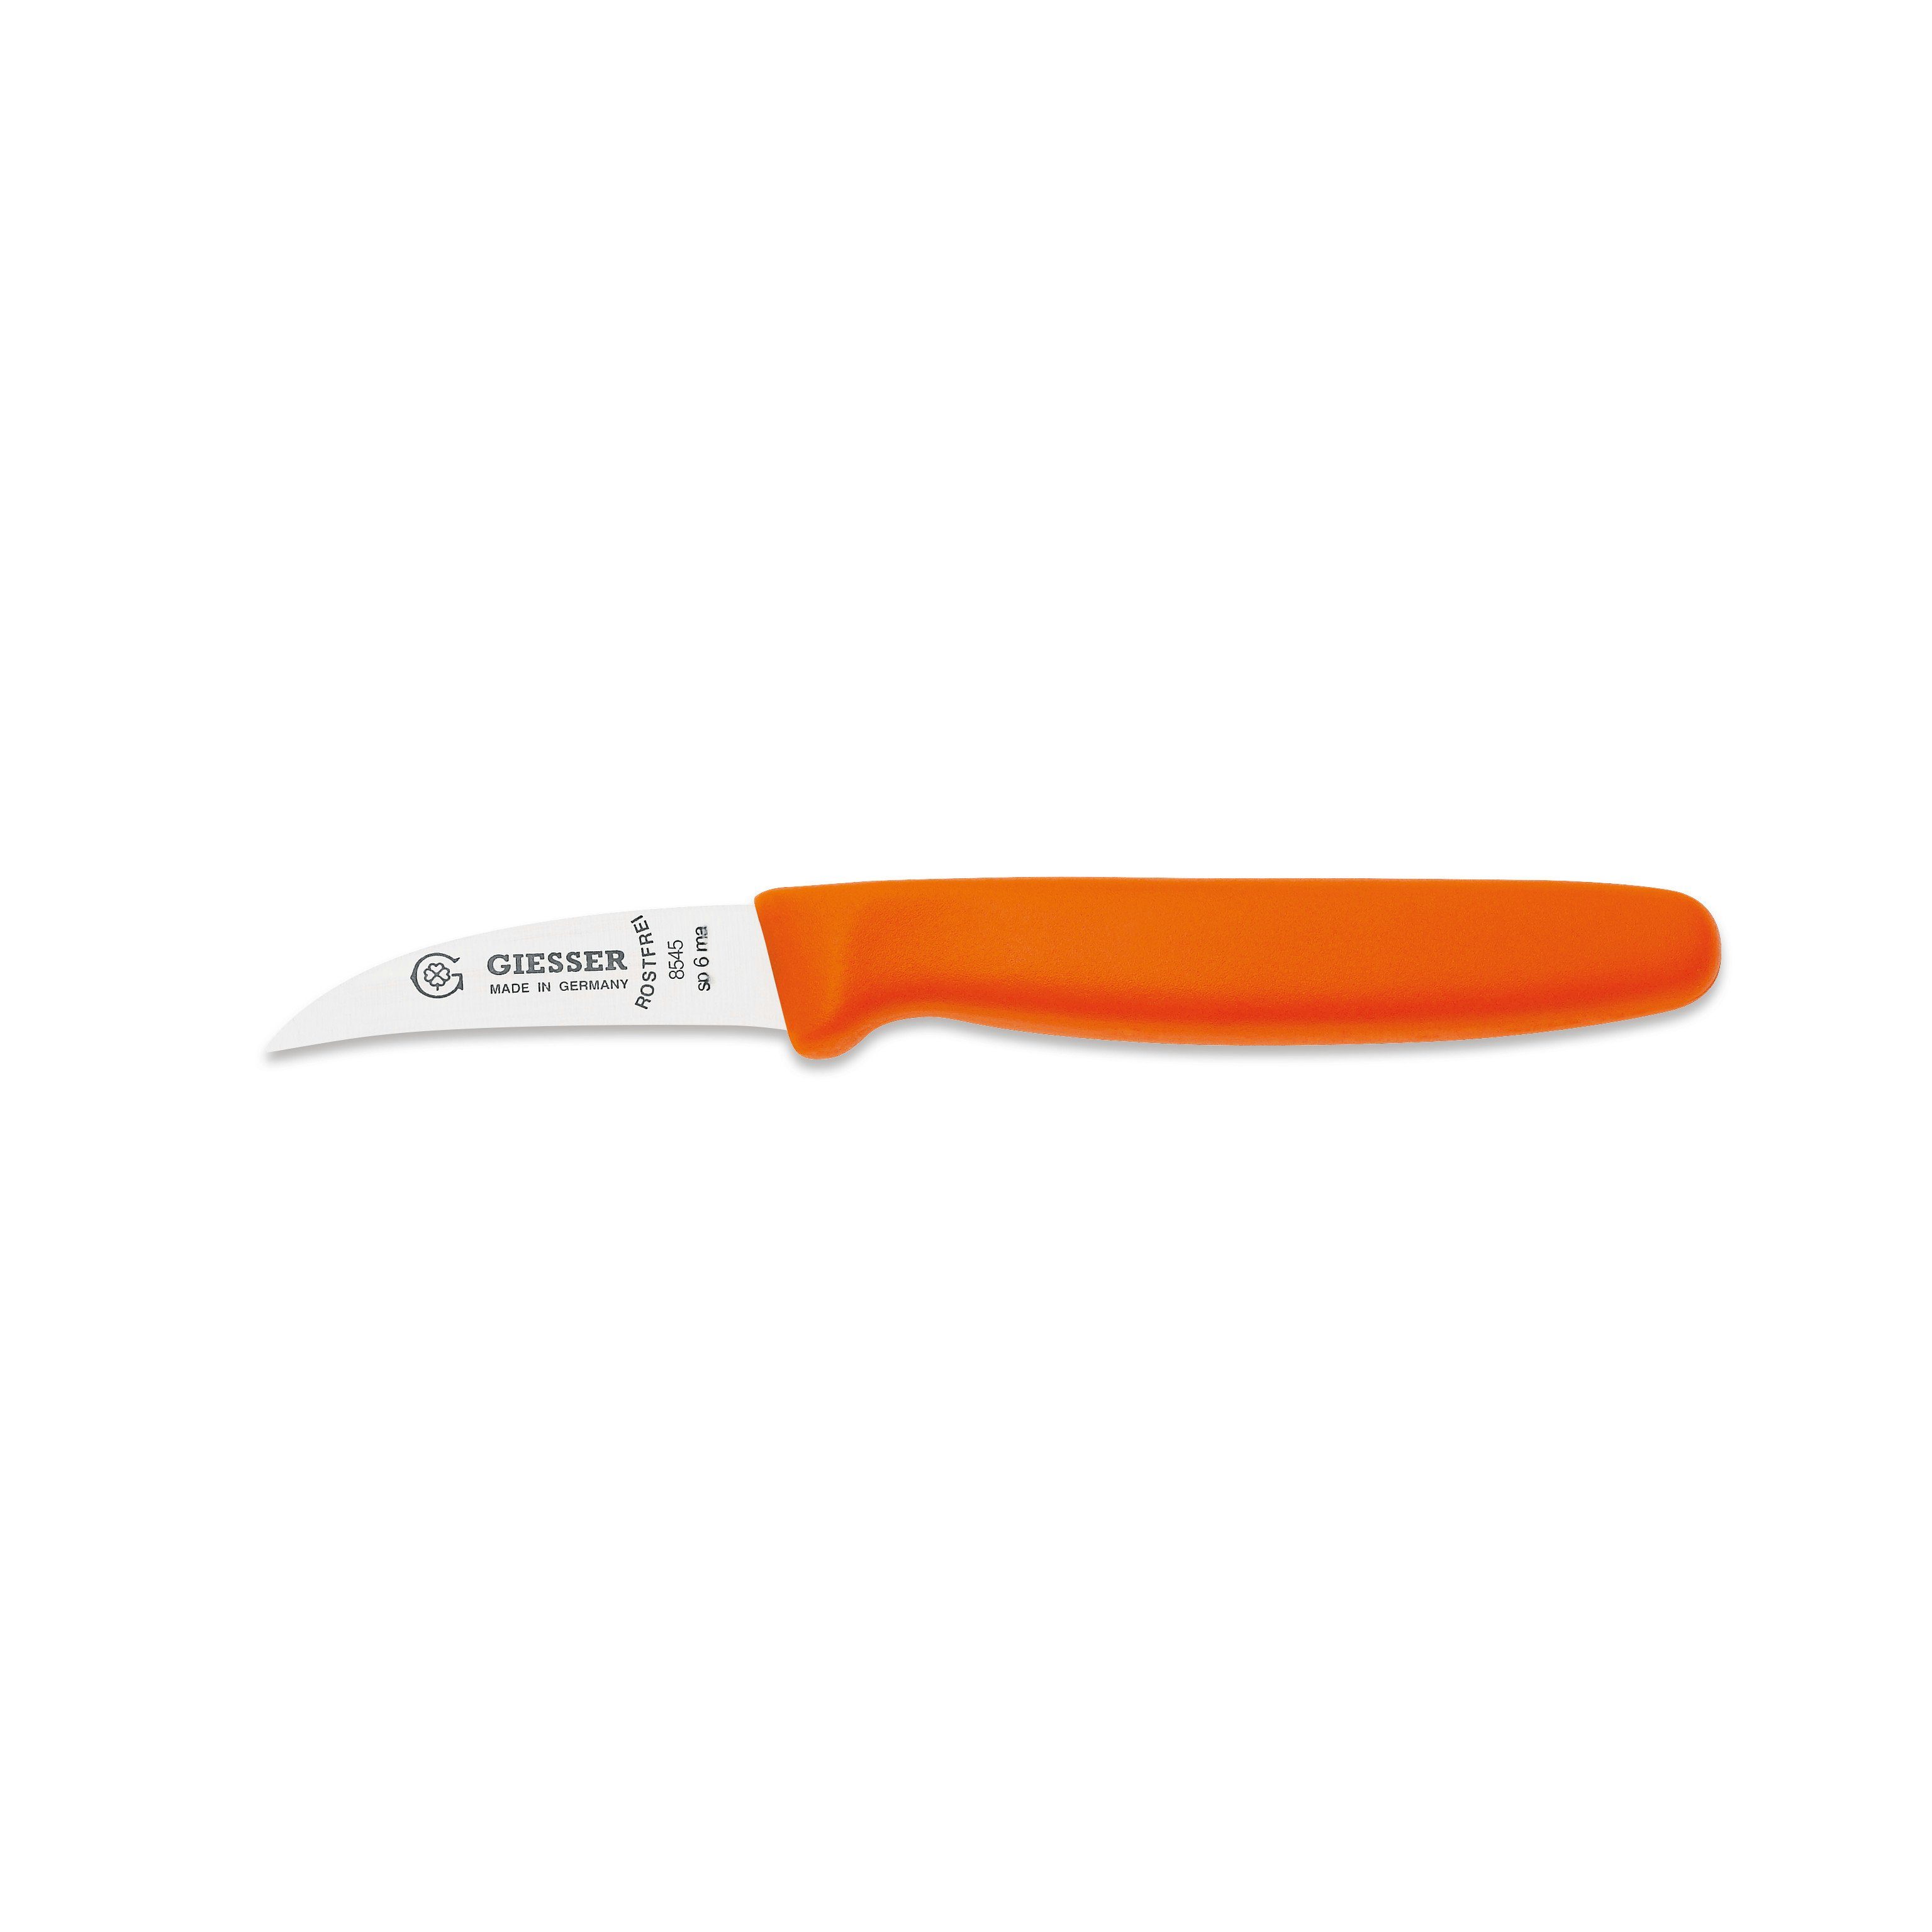 Giesser Messer 6 6, 8545 Schälmesser Handabzug, cm sp orange Klinge Hohle-Schneide Gemüsemesser